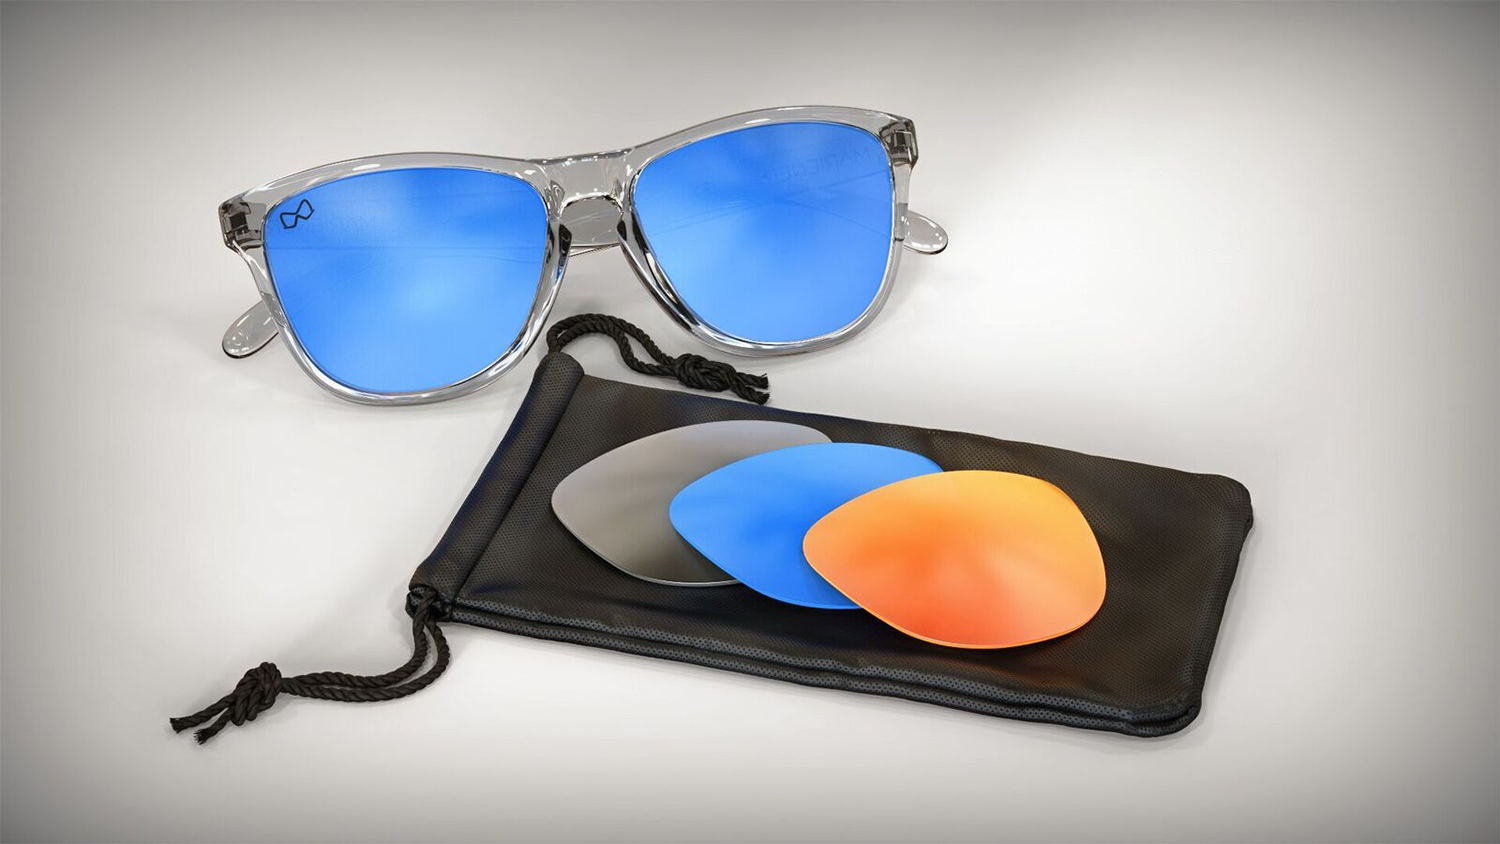 Wonderlijk Nederlanders maken zonnebrillen met mat glas - GadgetGear.nl LR-55